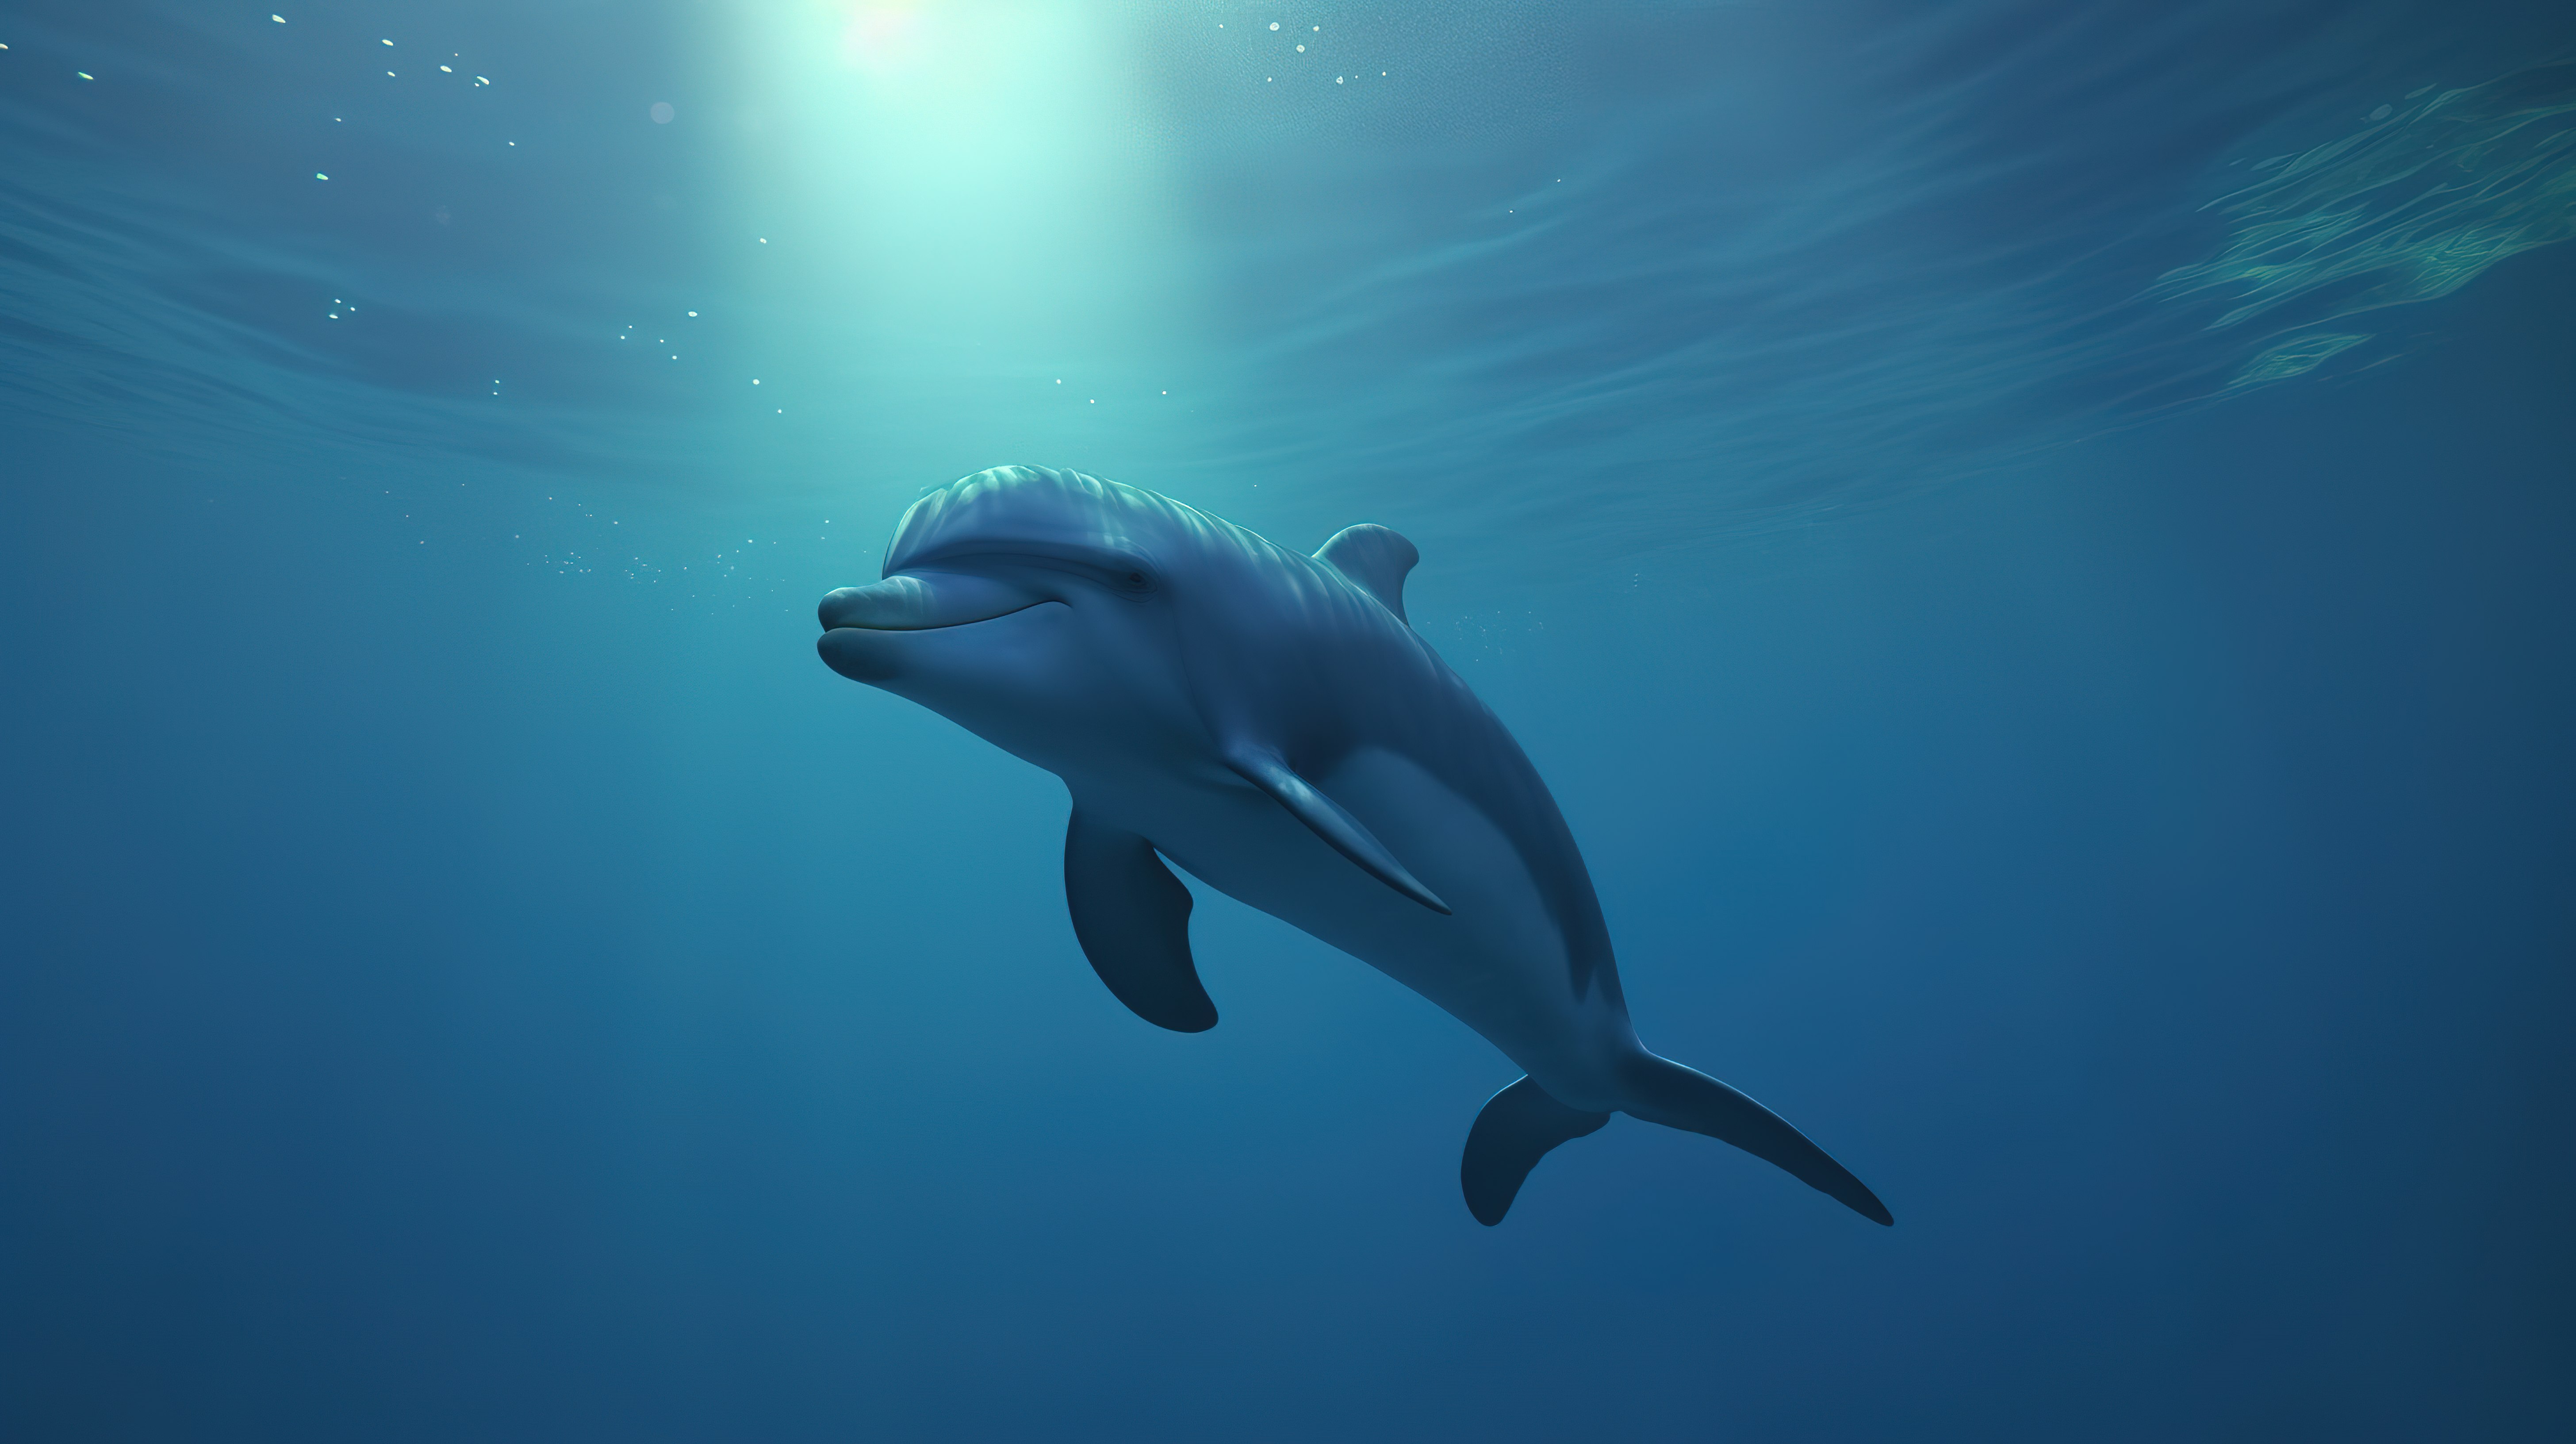 以 3d 呈现的海底世界中的卡通海豚图片